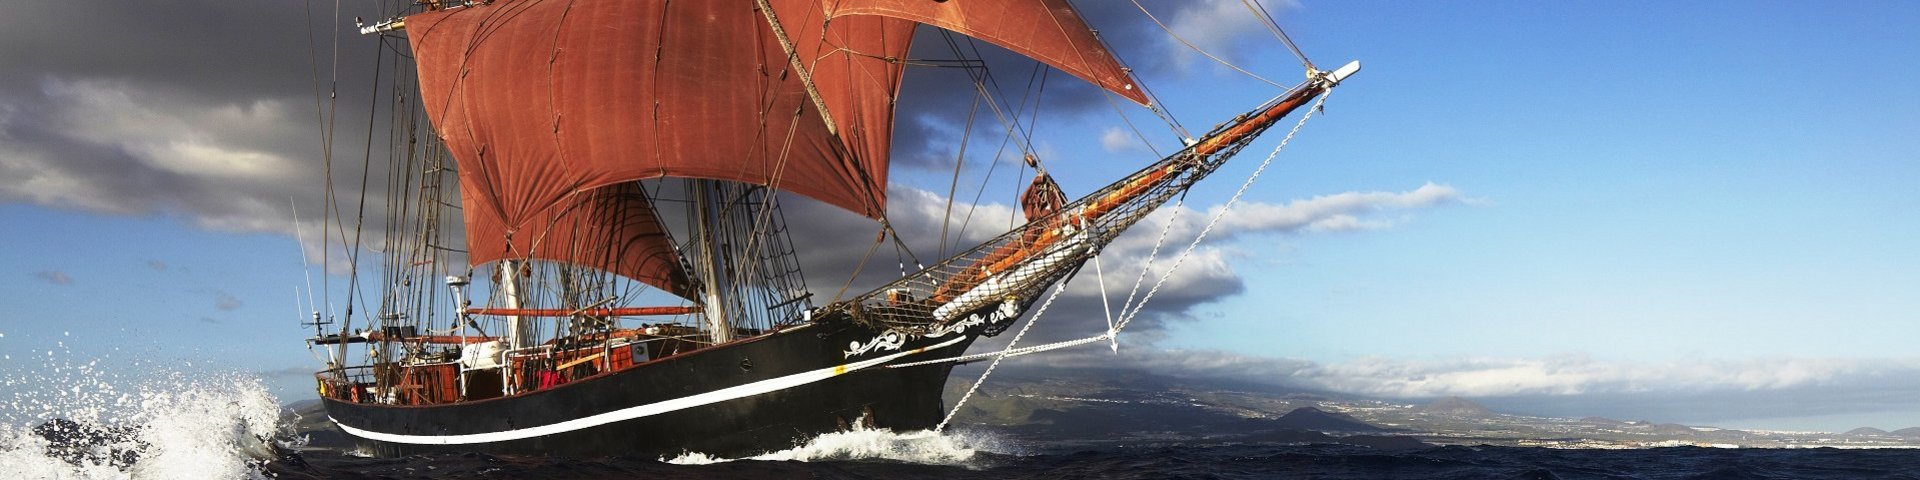 Schiffsbild der Eye of the Wind unter vollen Segeln